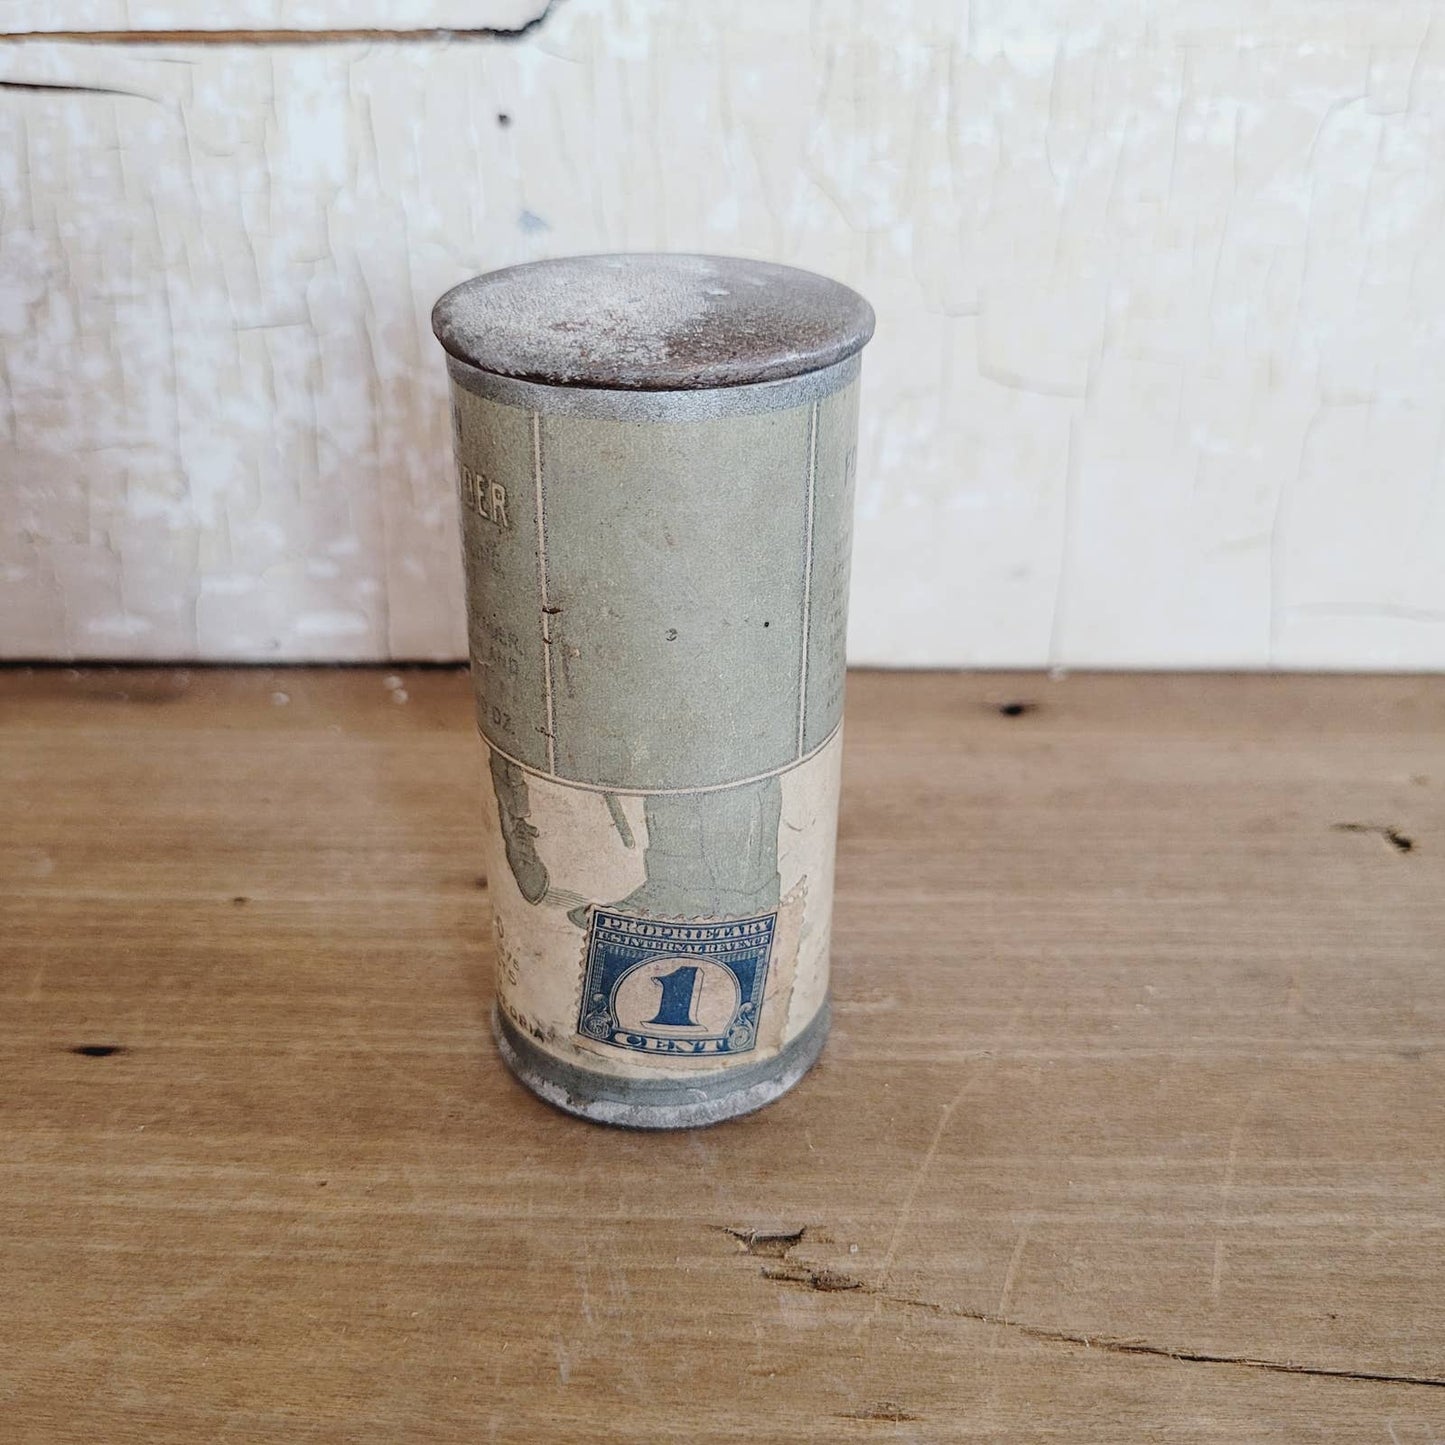 Vintage Larkin Foot Powder Tin